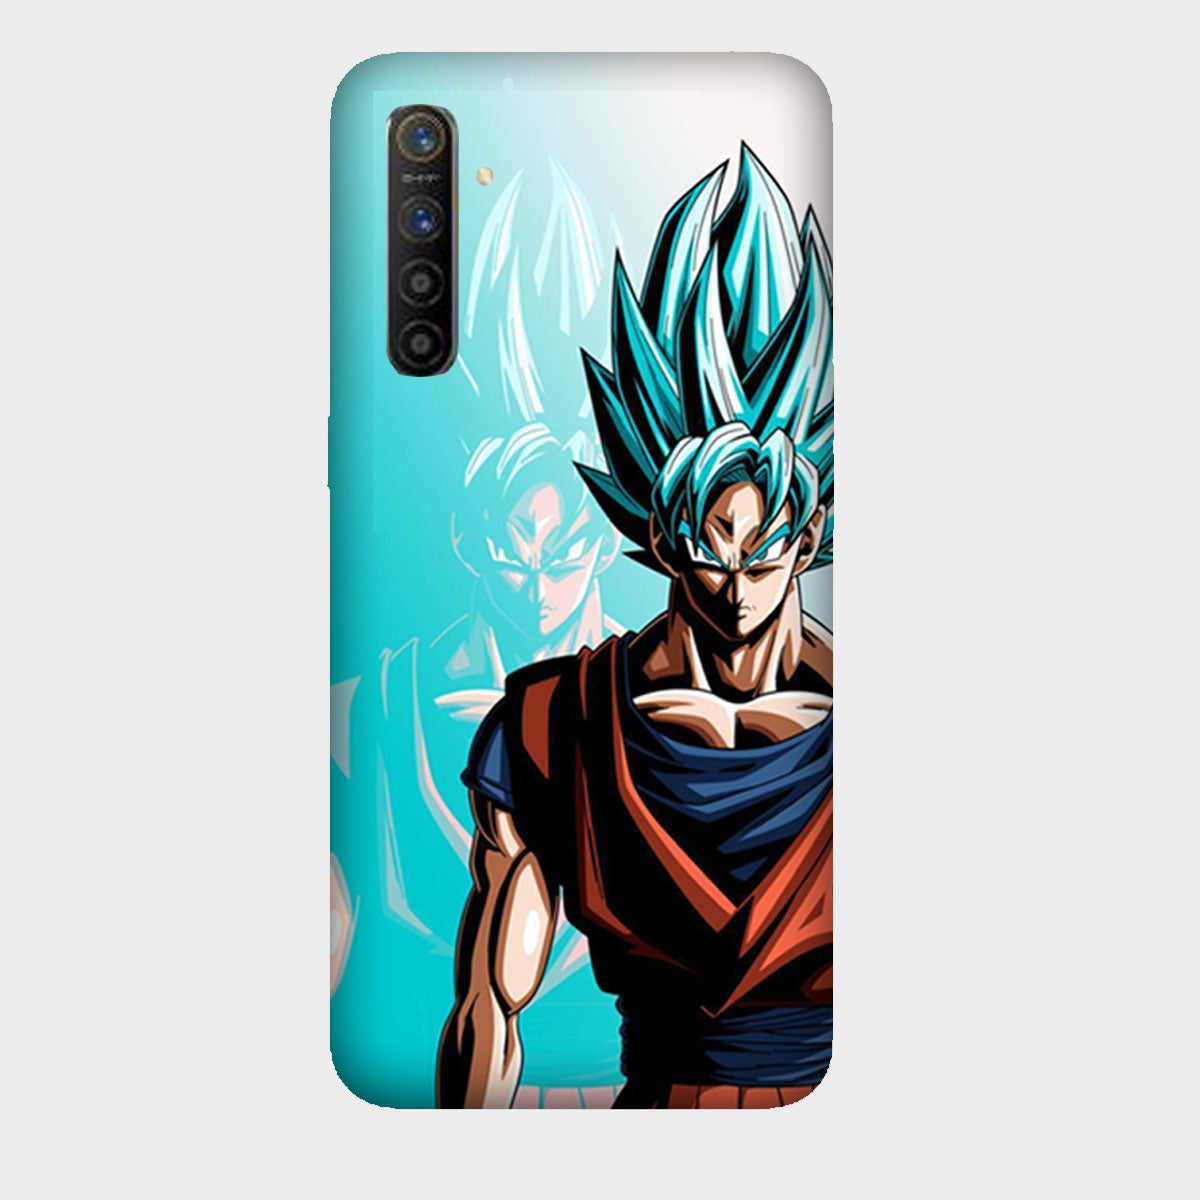 Goku Dragon Ball Z - Mobile Phone Cover - Hard Case